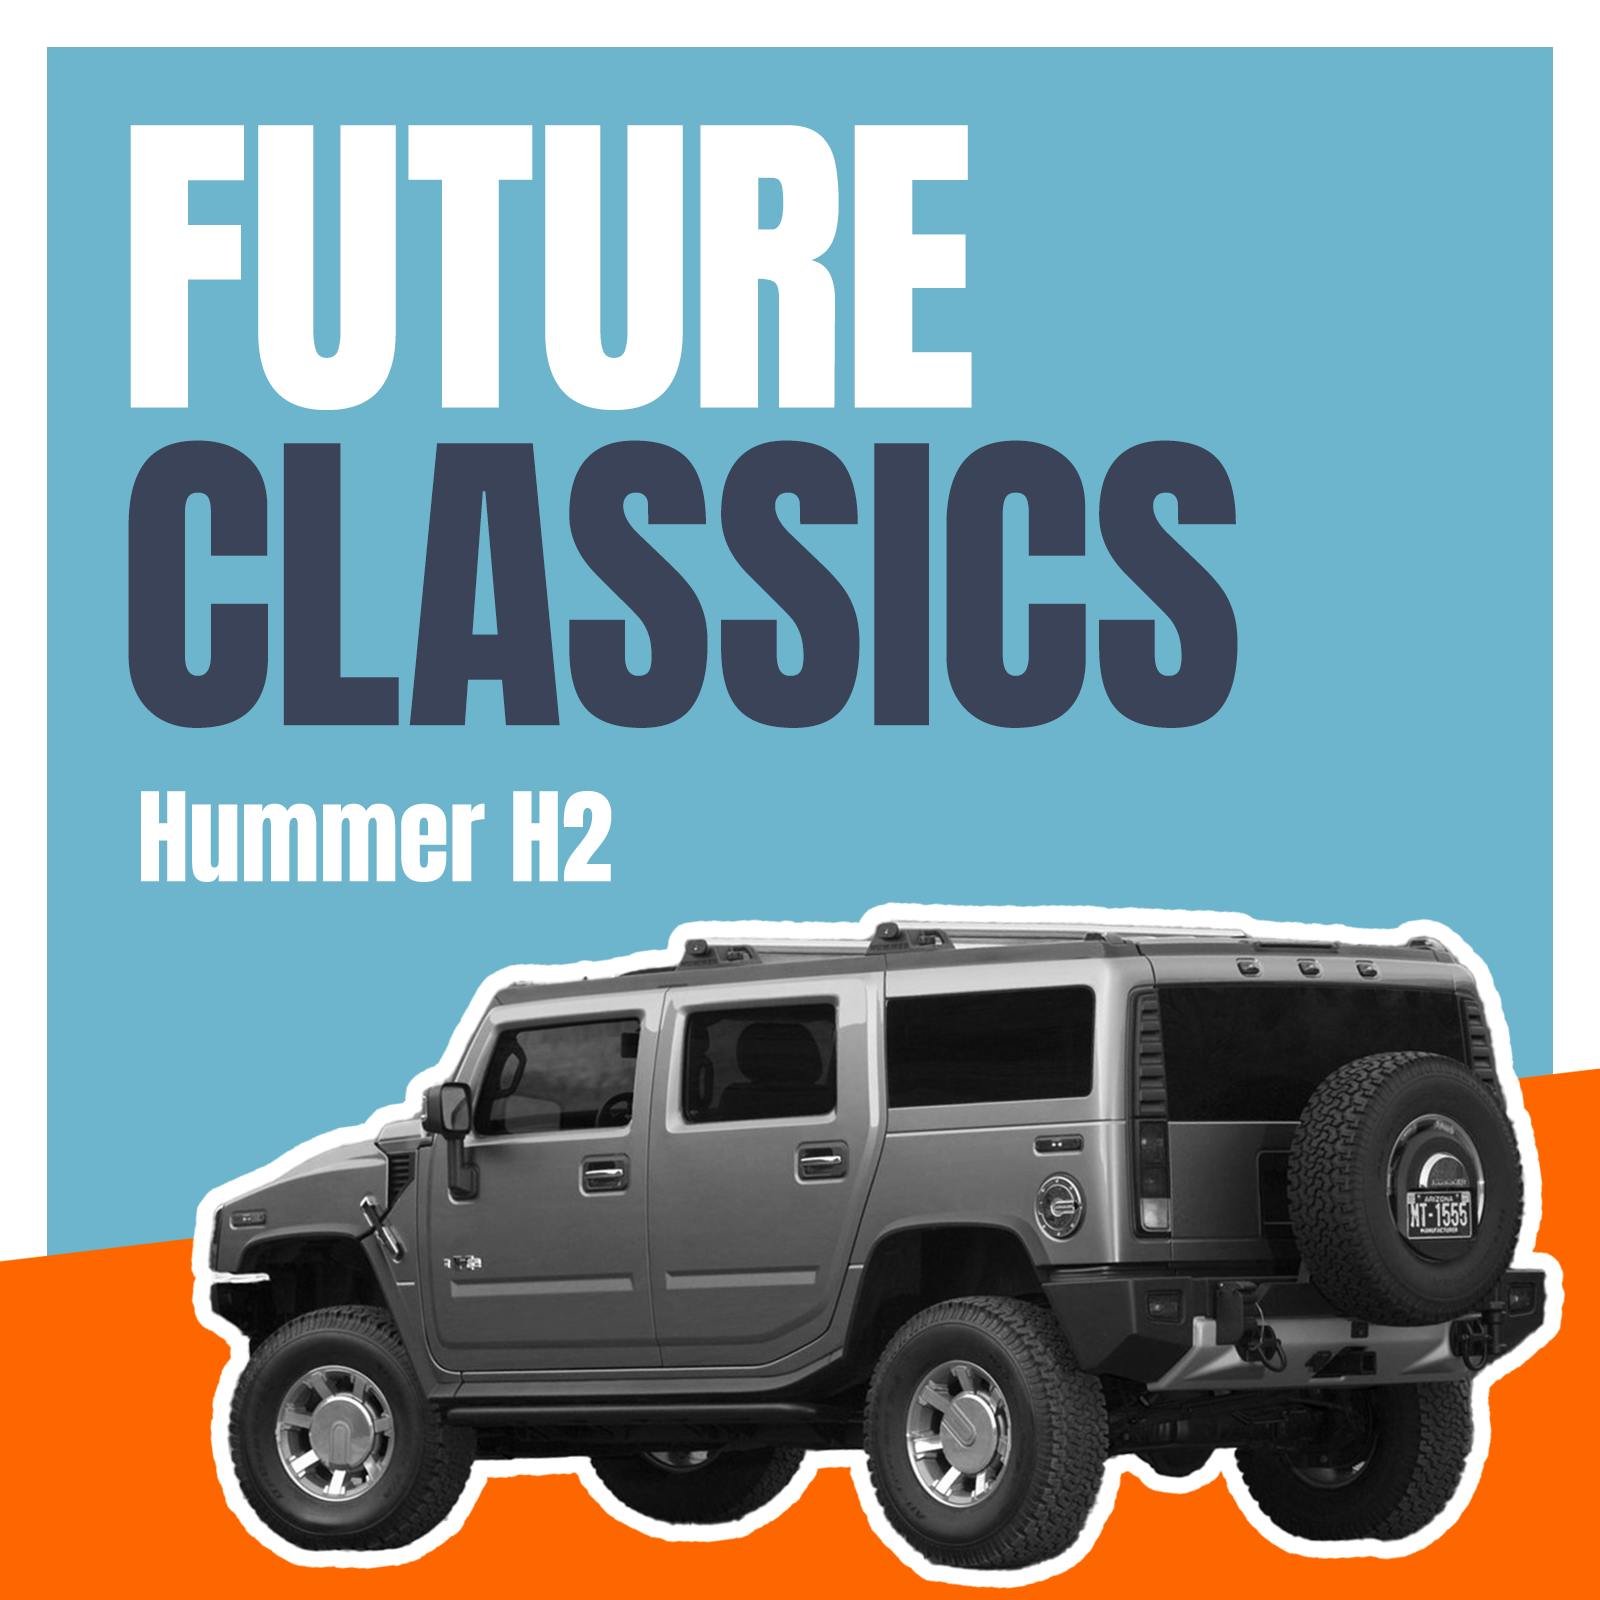 Hummer H2 – Folge 23